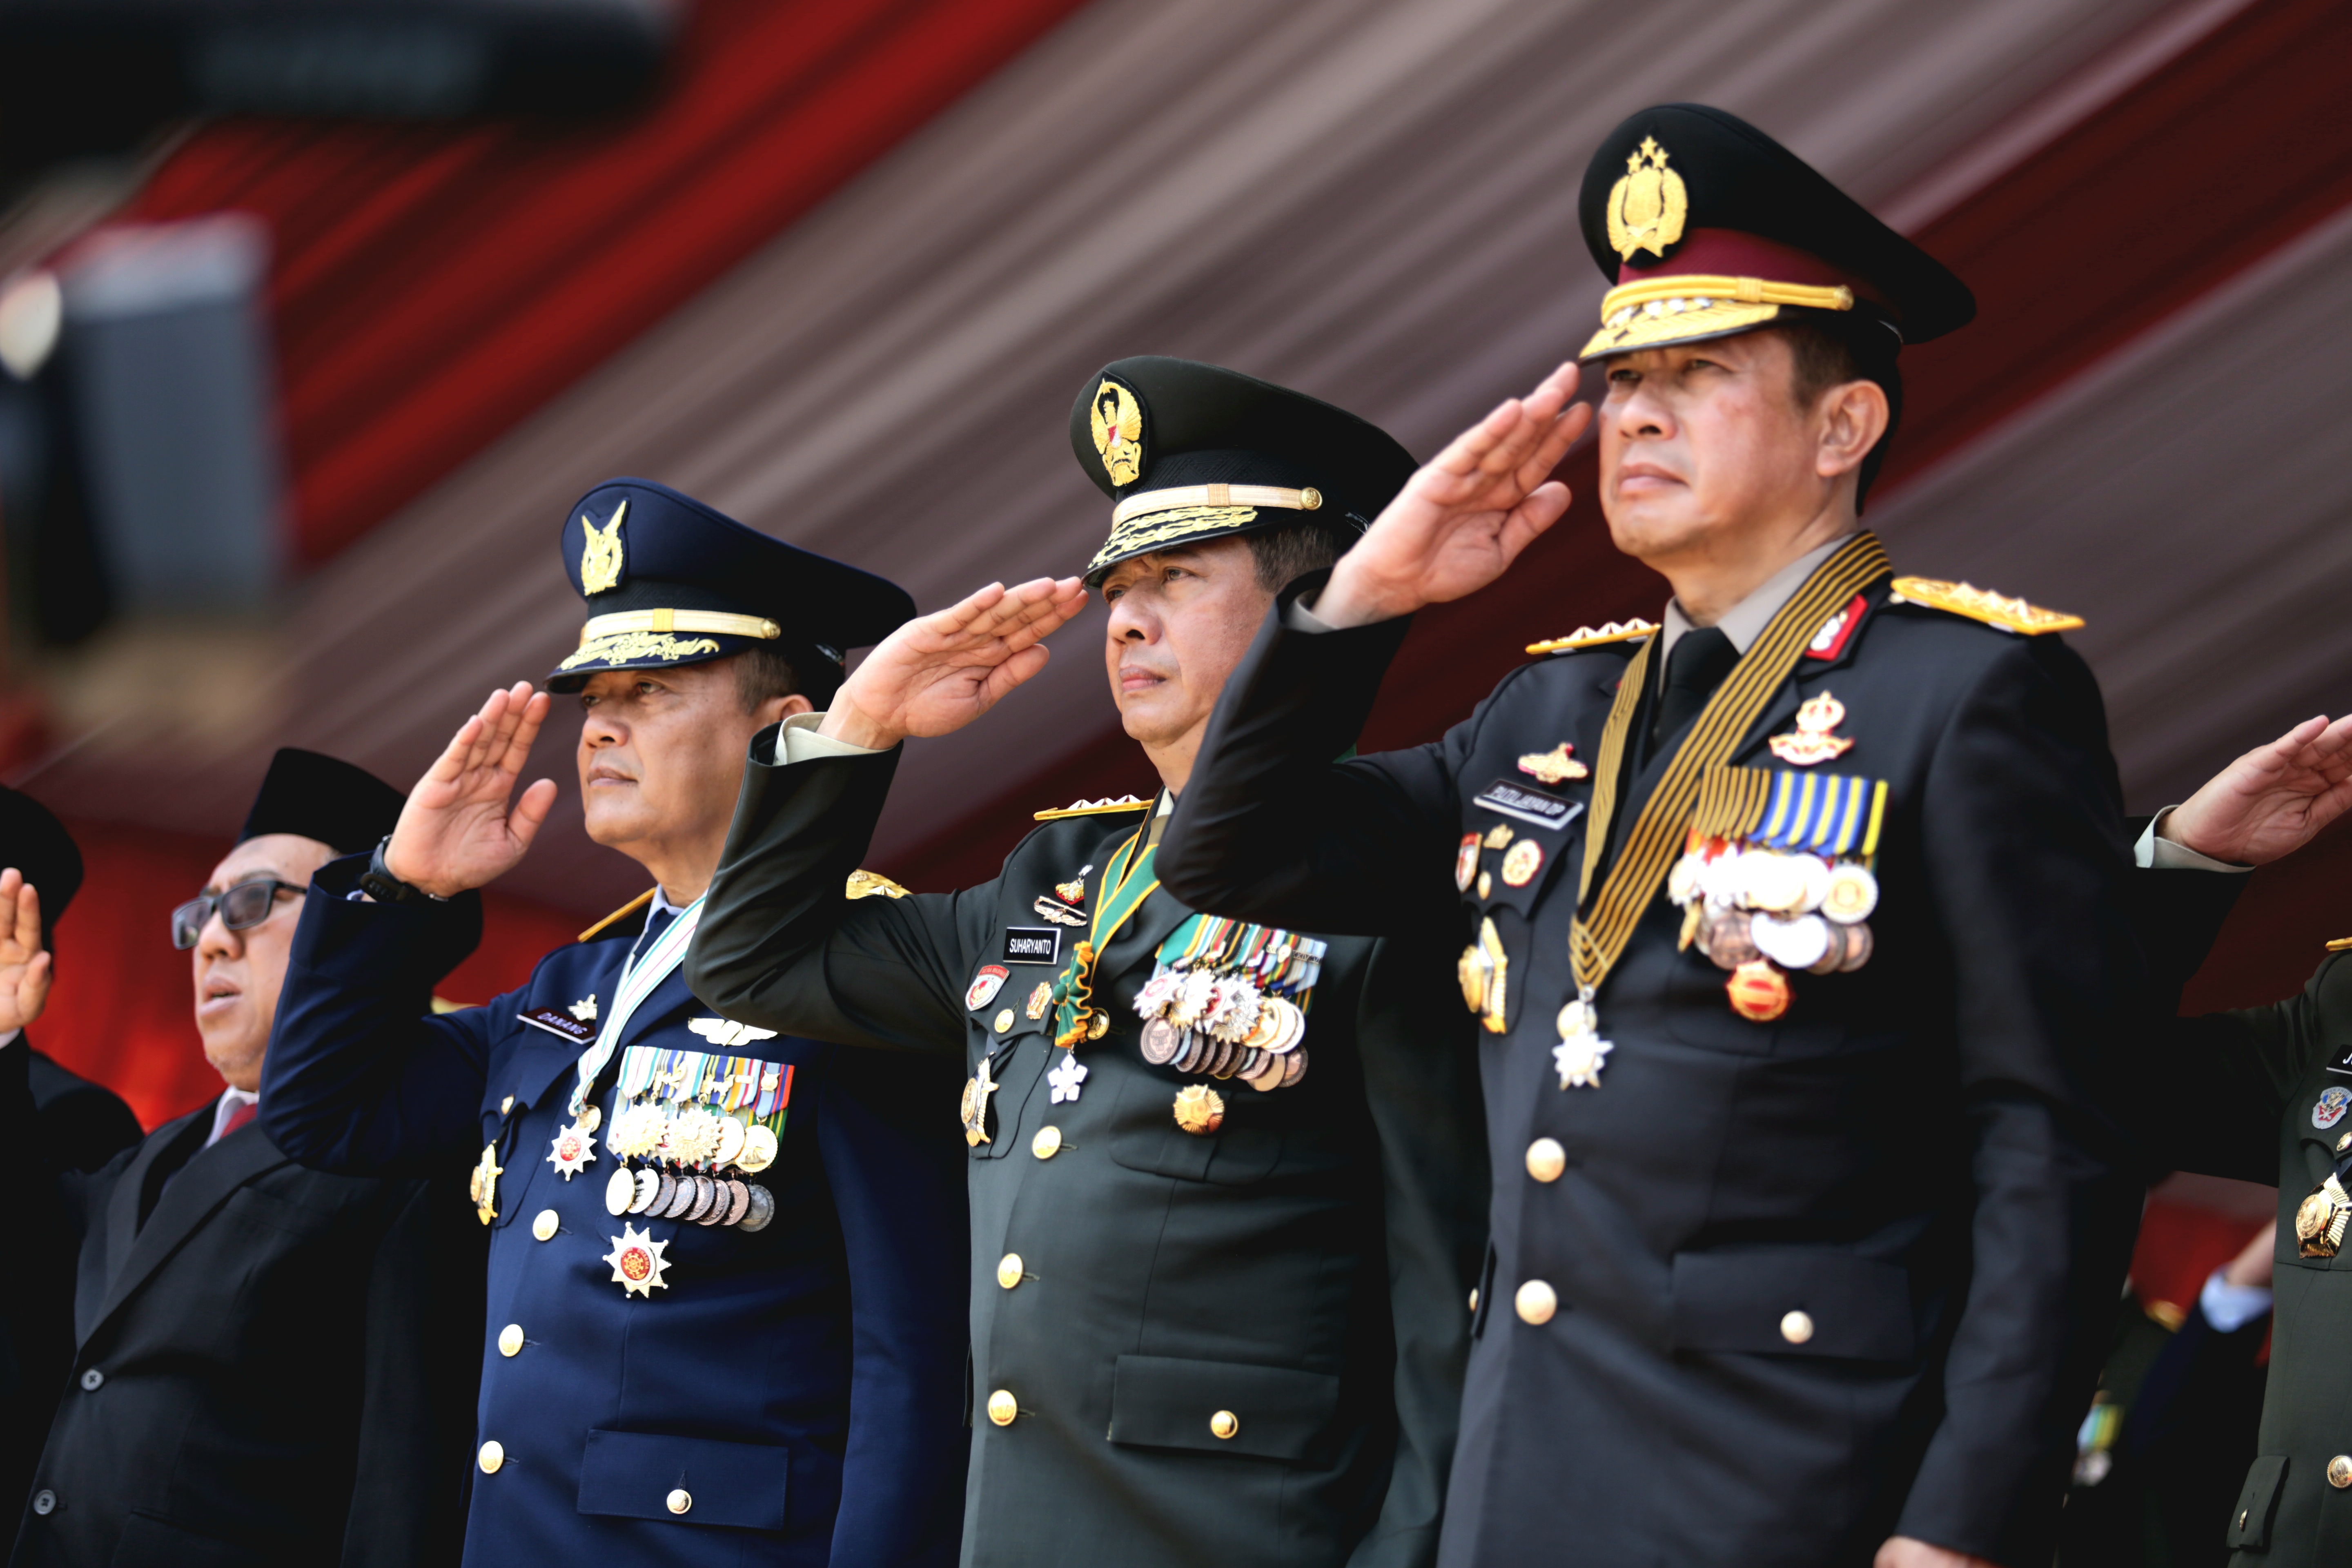 Kepala BNPB Letjen TNI Suharyanto, S.Sos., M.M. (kedua dari kanan) menghadiri upacara peringatan Hari Ulang Tahun (HUT) ke-78 Tentara Nasional Indonesia (TNI) yang dihelat di Monumen Nasional, Jakarta, Kamis (5/10). 